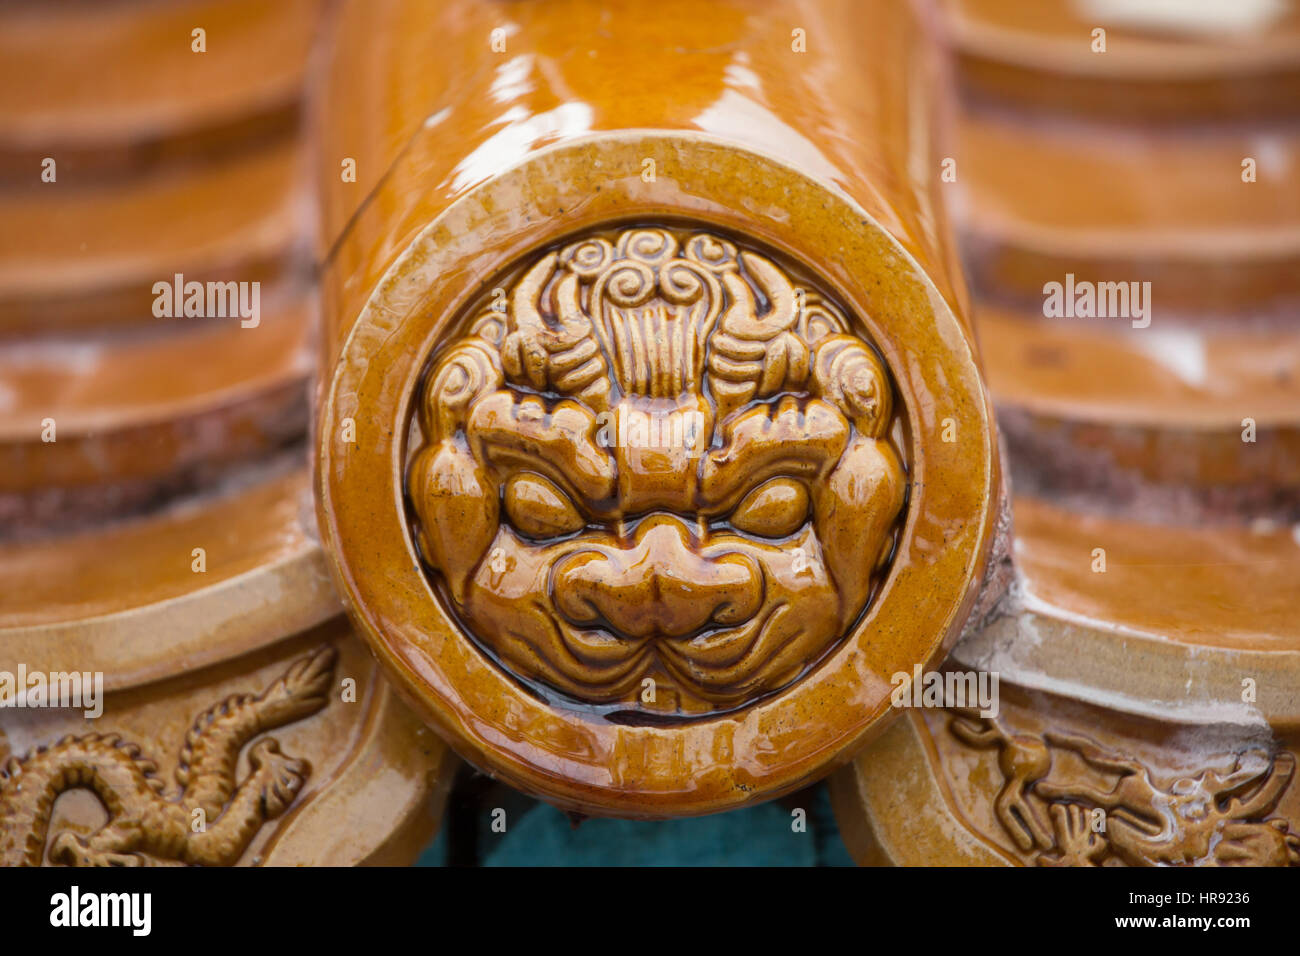 Tuiles vernissées en chinois traditionnel. Banque D'Images